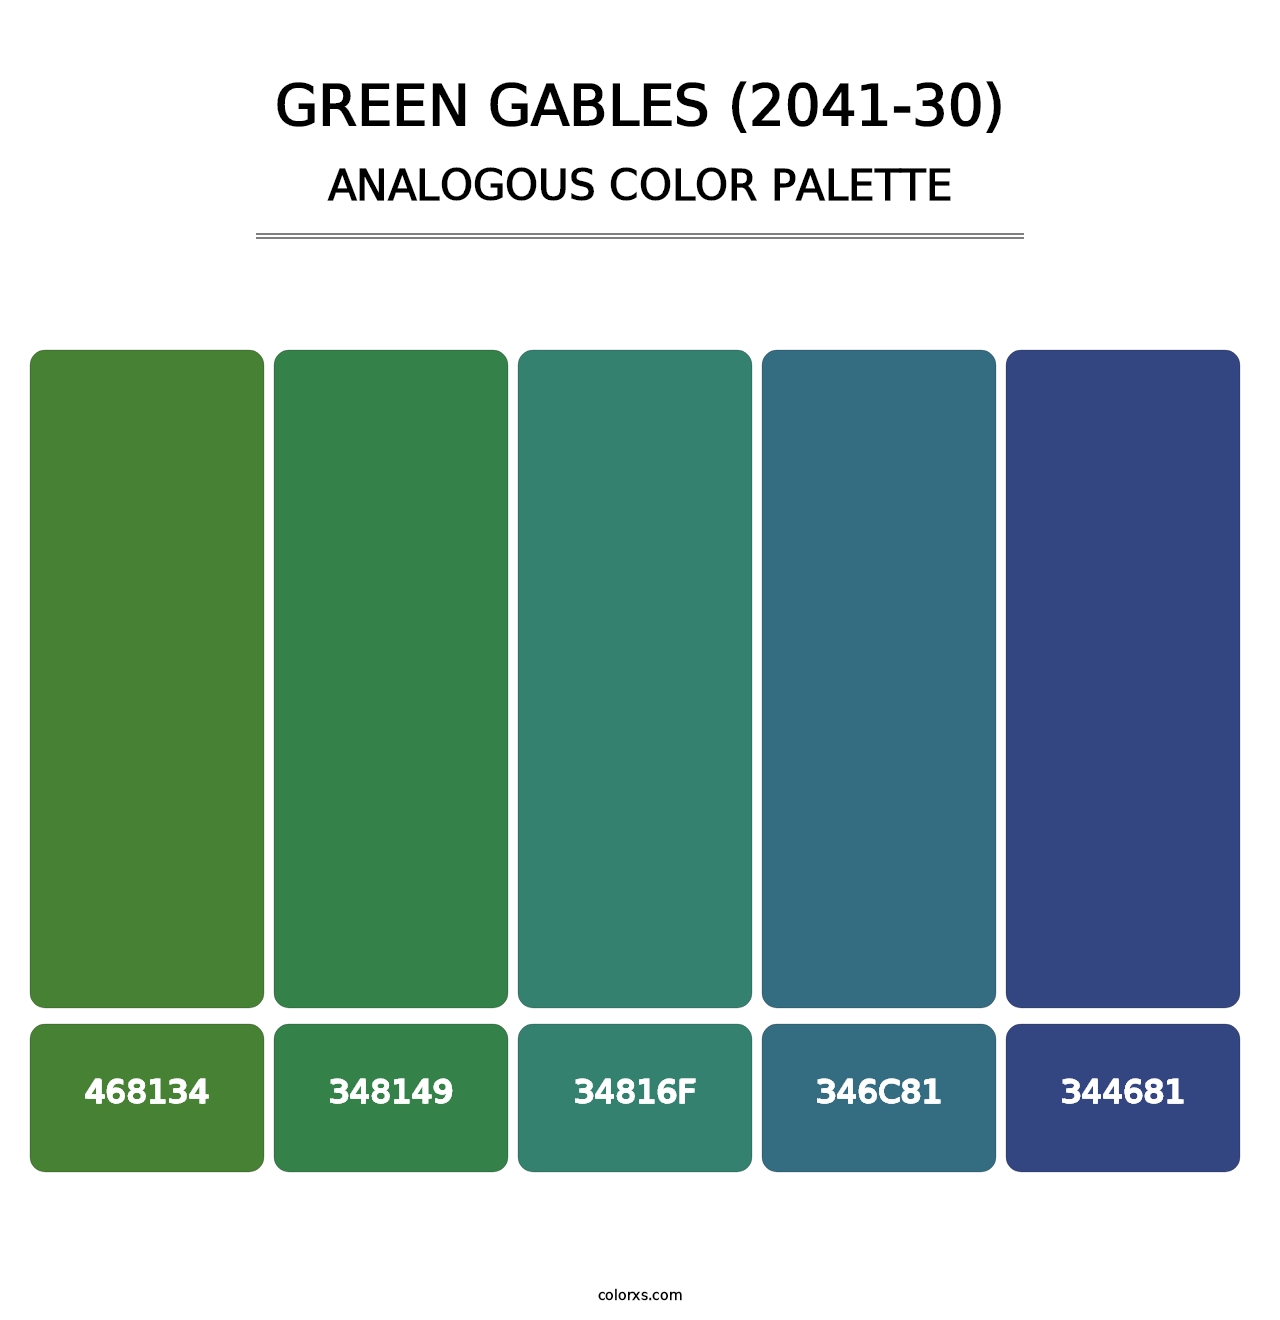 Green Gables (2041-30) - Analogous Color Palette